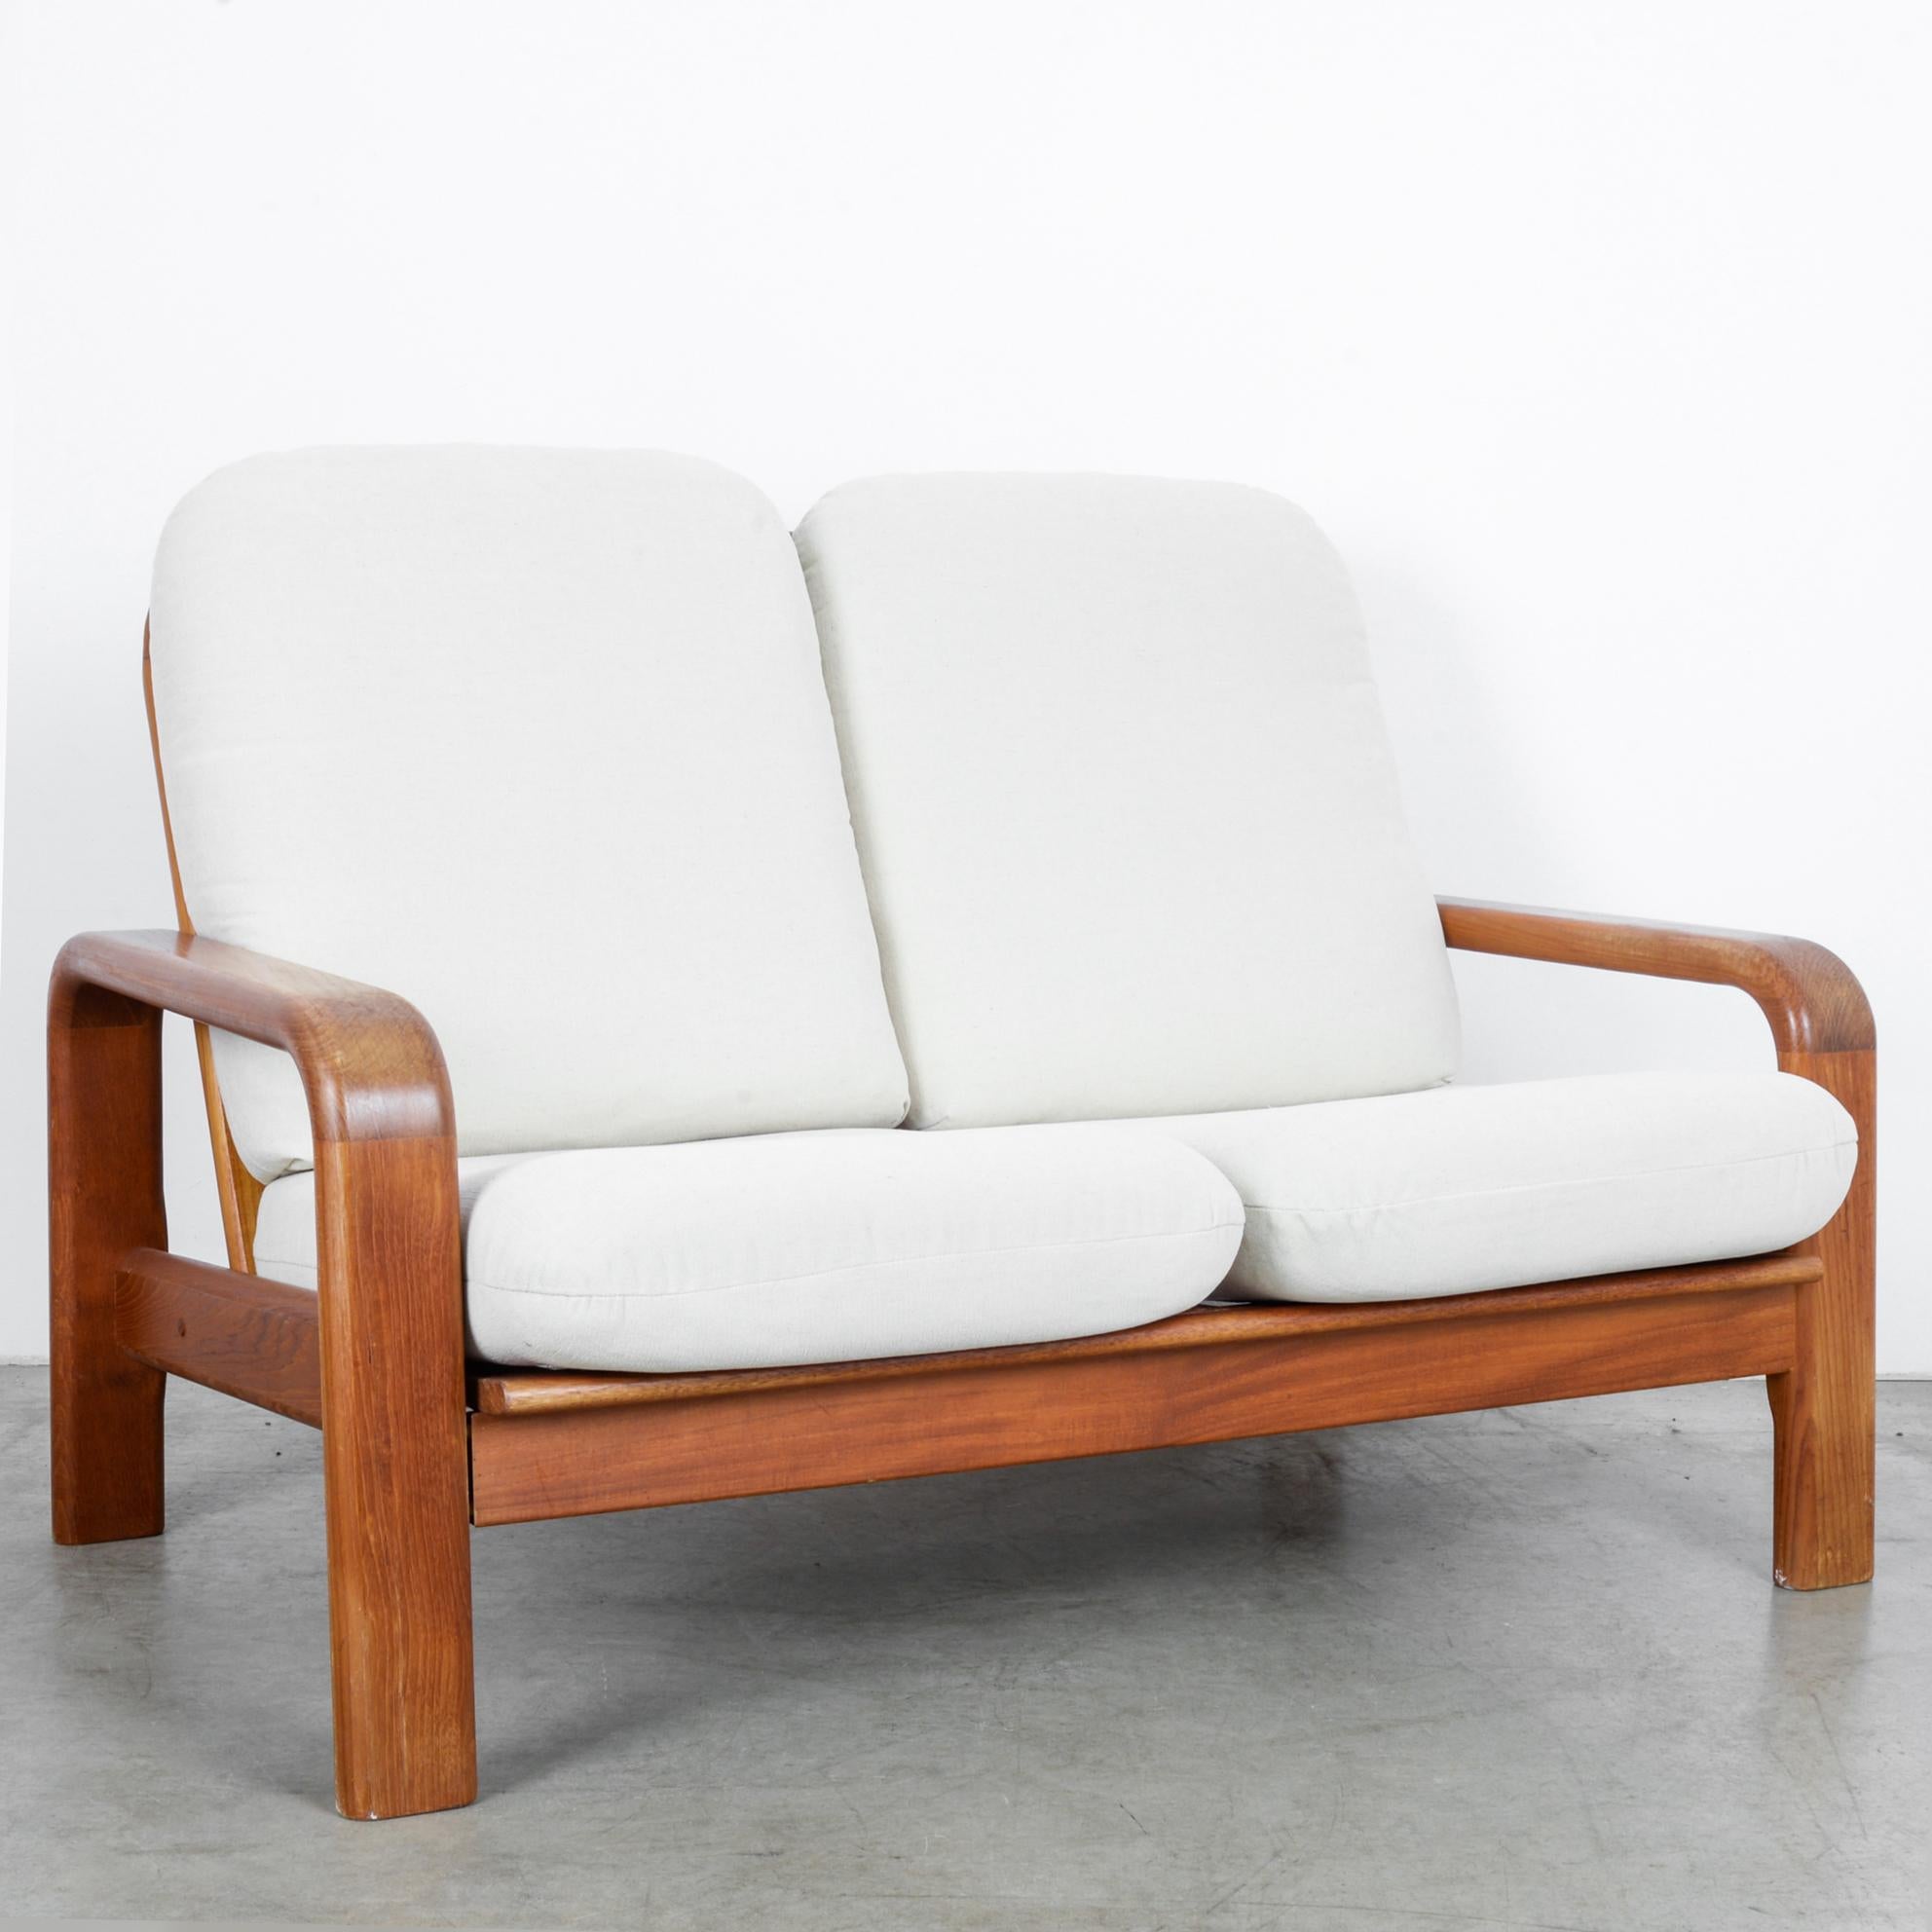 Dieses zweisitzige Sofa wurde um 1960 in Dänemark hergestellt. Die elfenbeinweiß gepolsterten Sitze und Rückenlehnen bieten Komfort und unterstreichen die warmen Töne des polierten Holzes. Die Arm- und Rückenlehnen weisen abgerundete Kanten auf, die